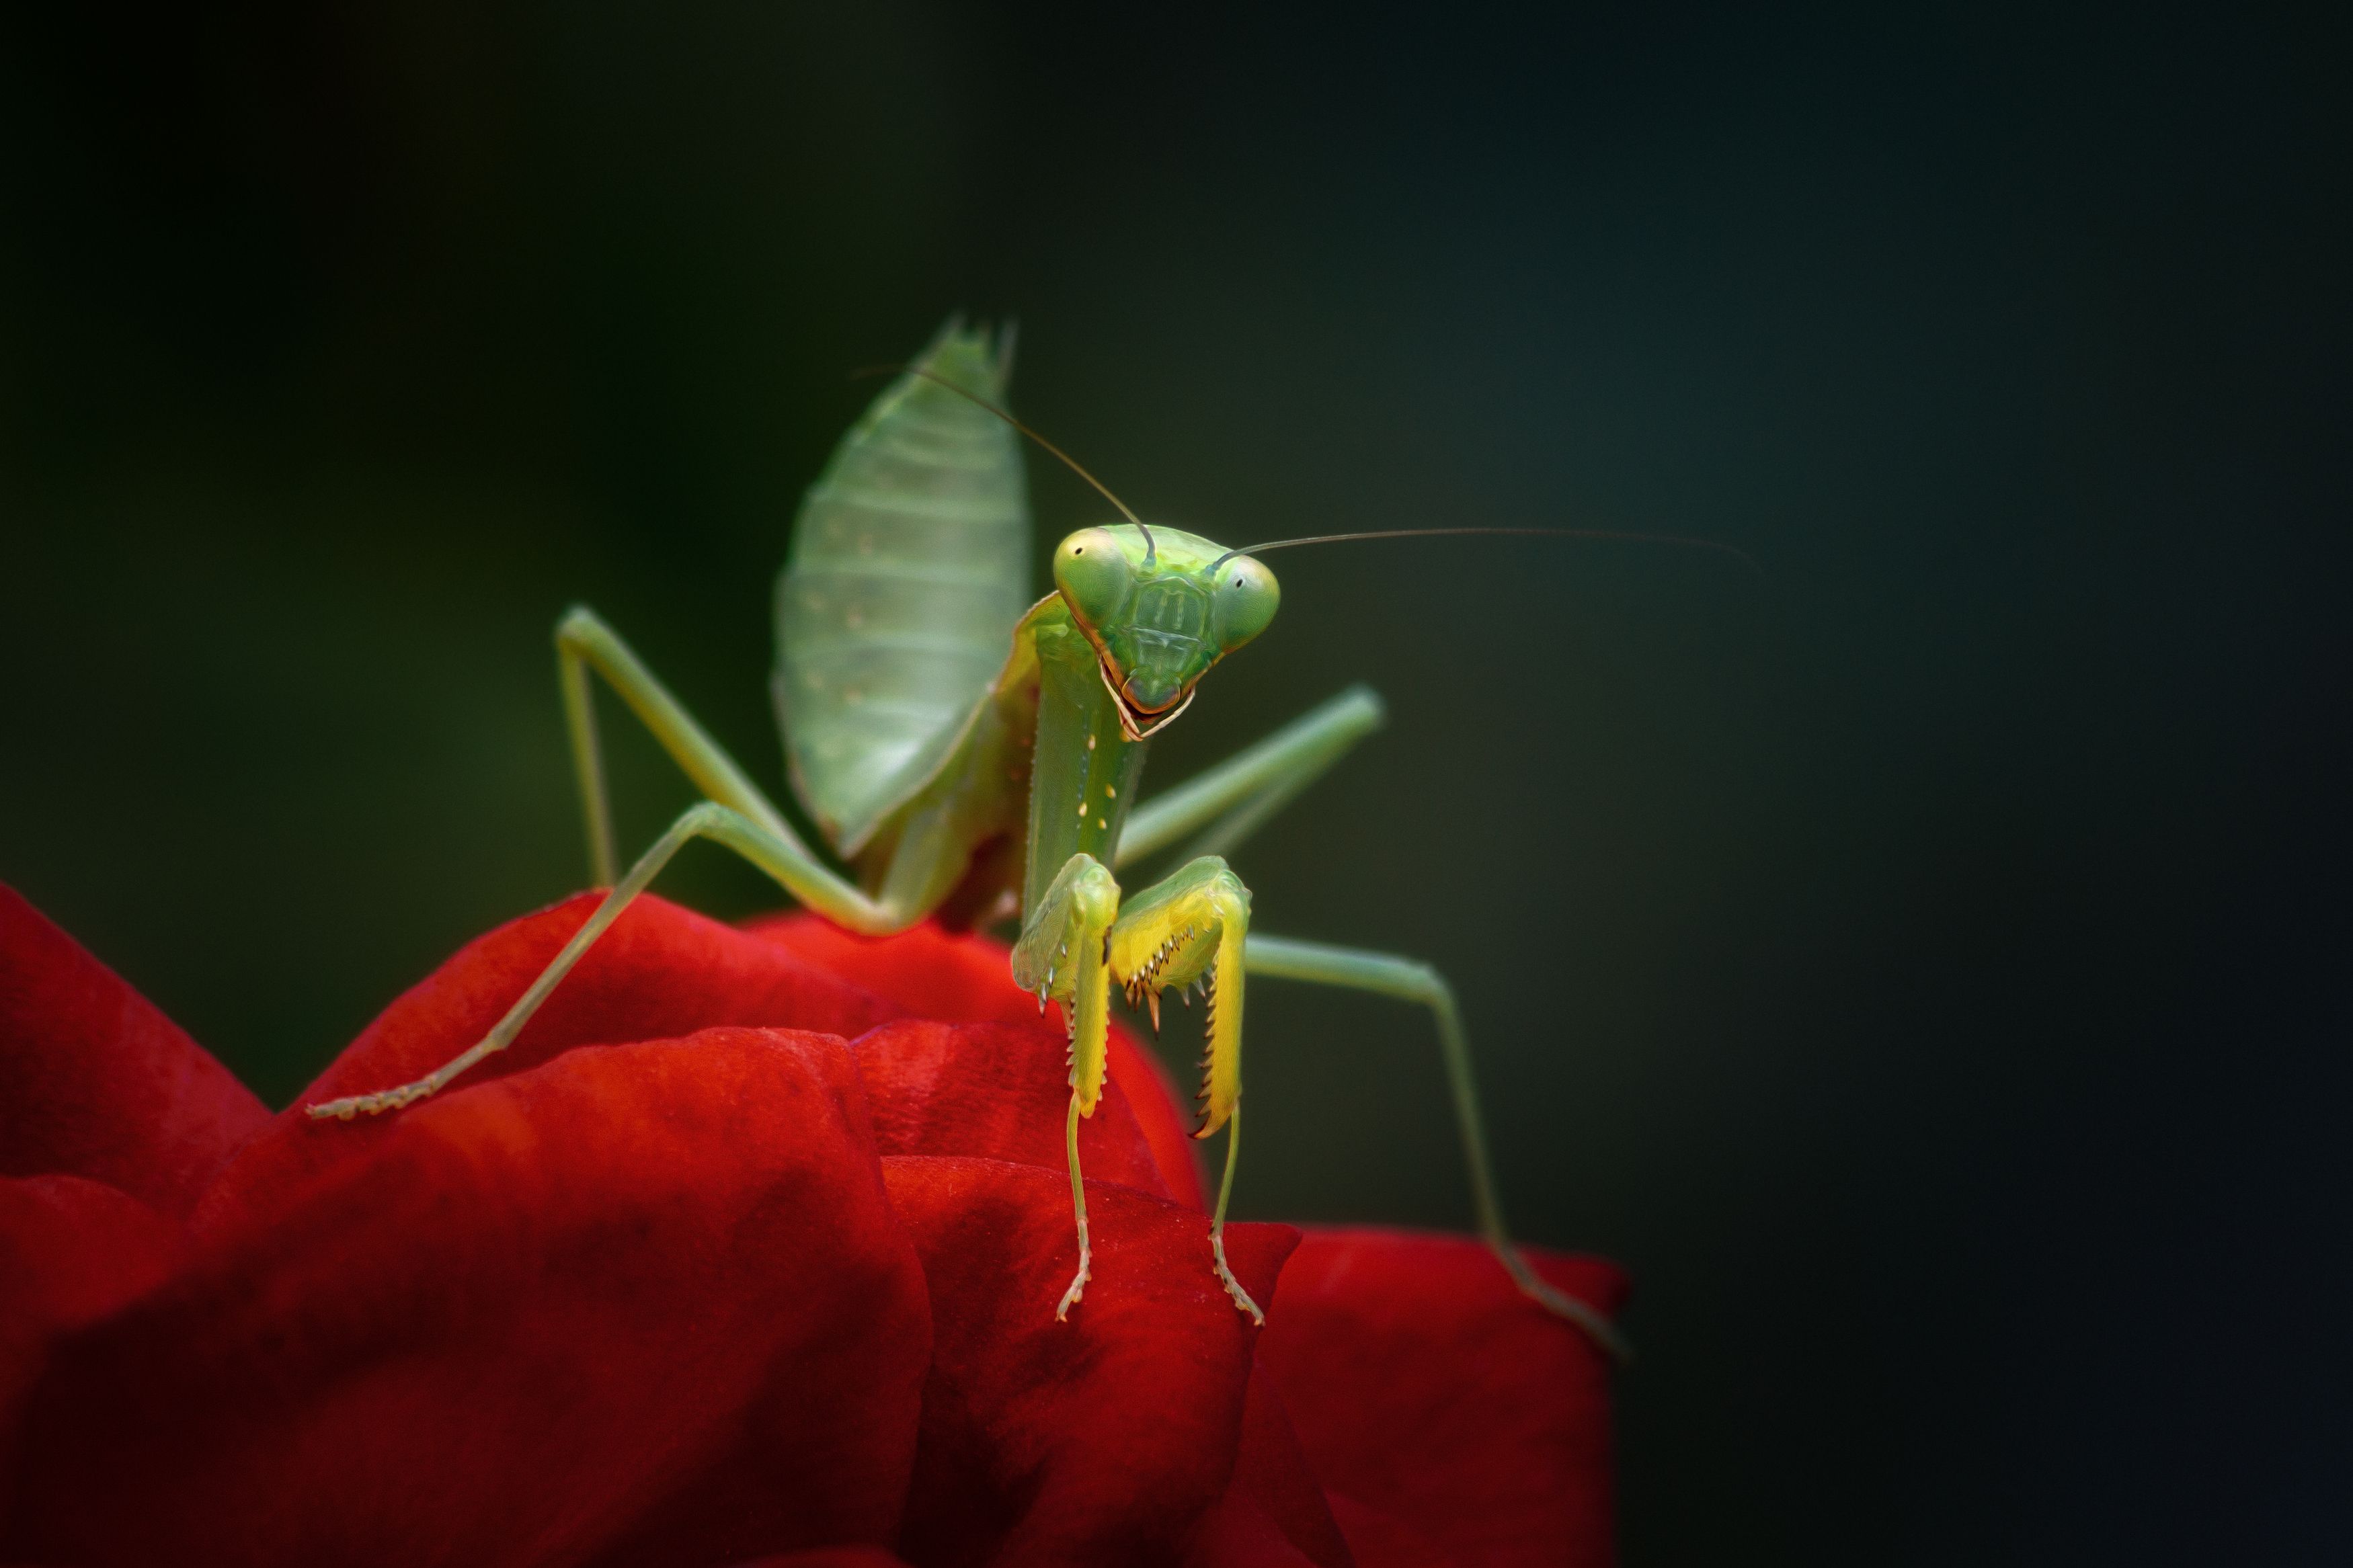 богомол роза лето взгляд глаза макрофотография насекомые природа, Еремеев Дмитрий